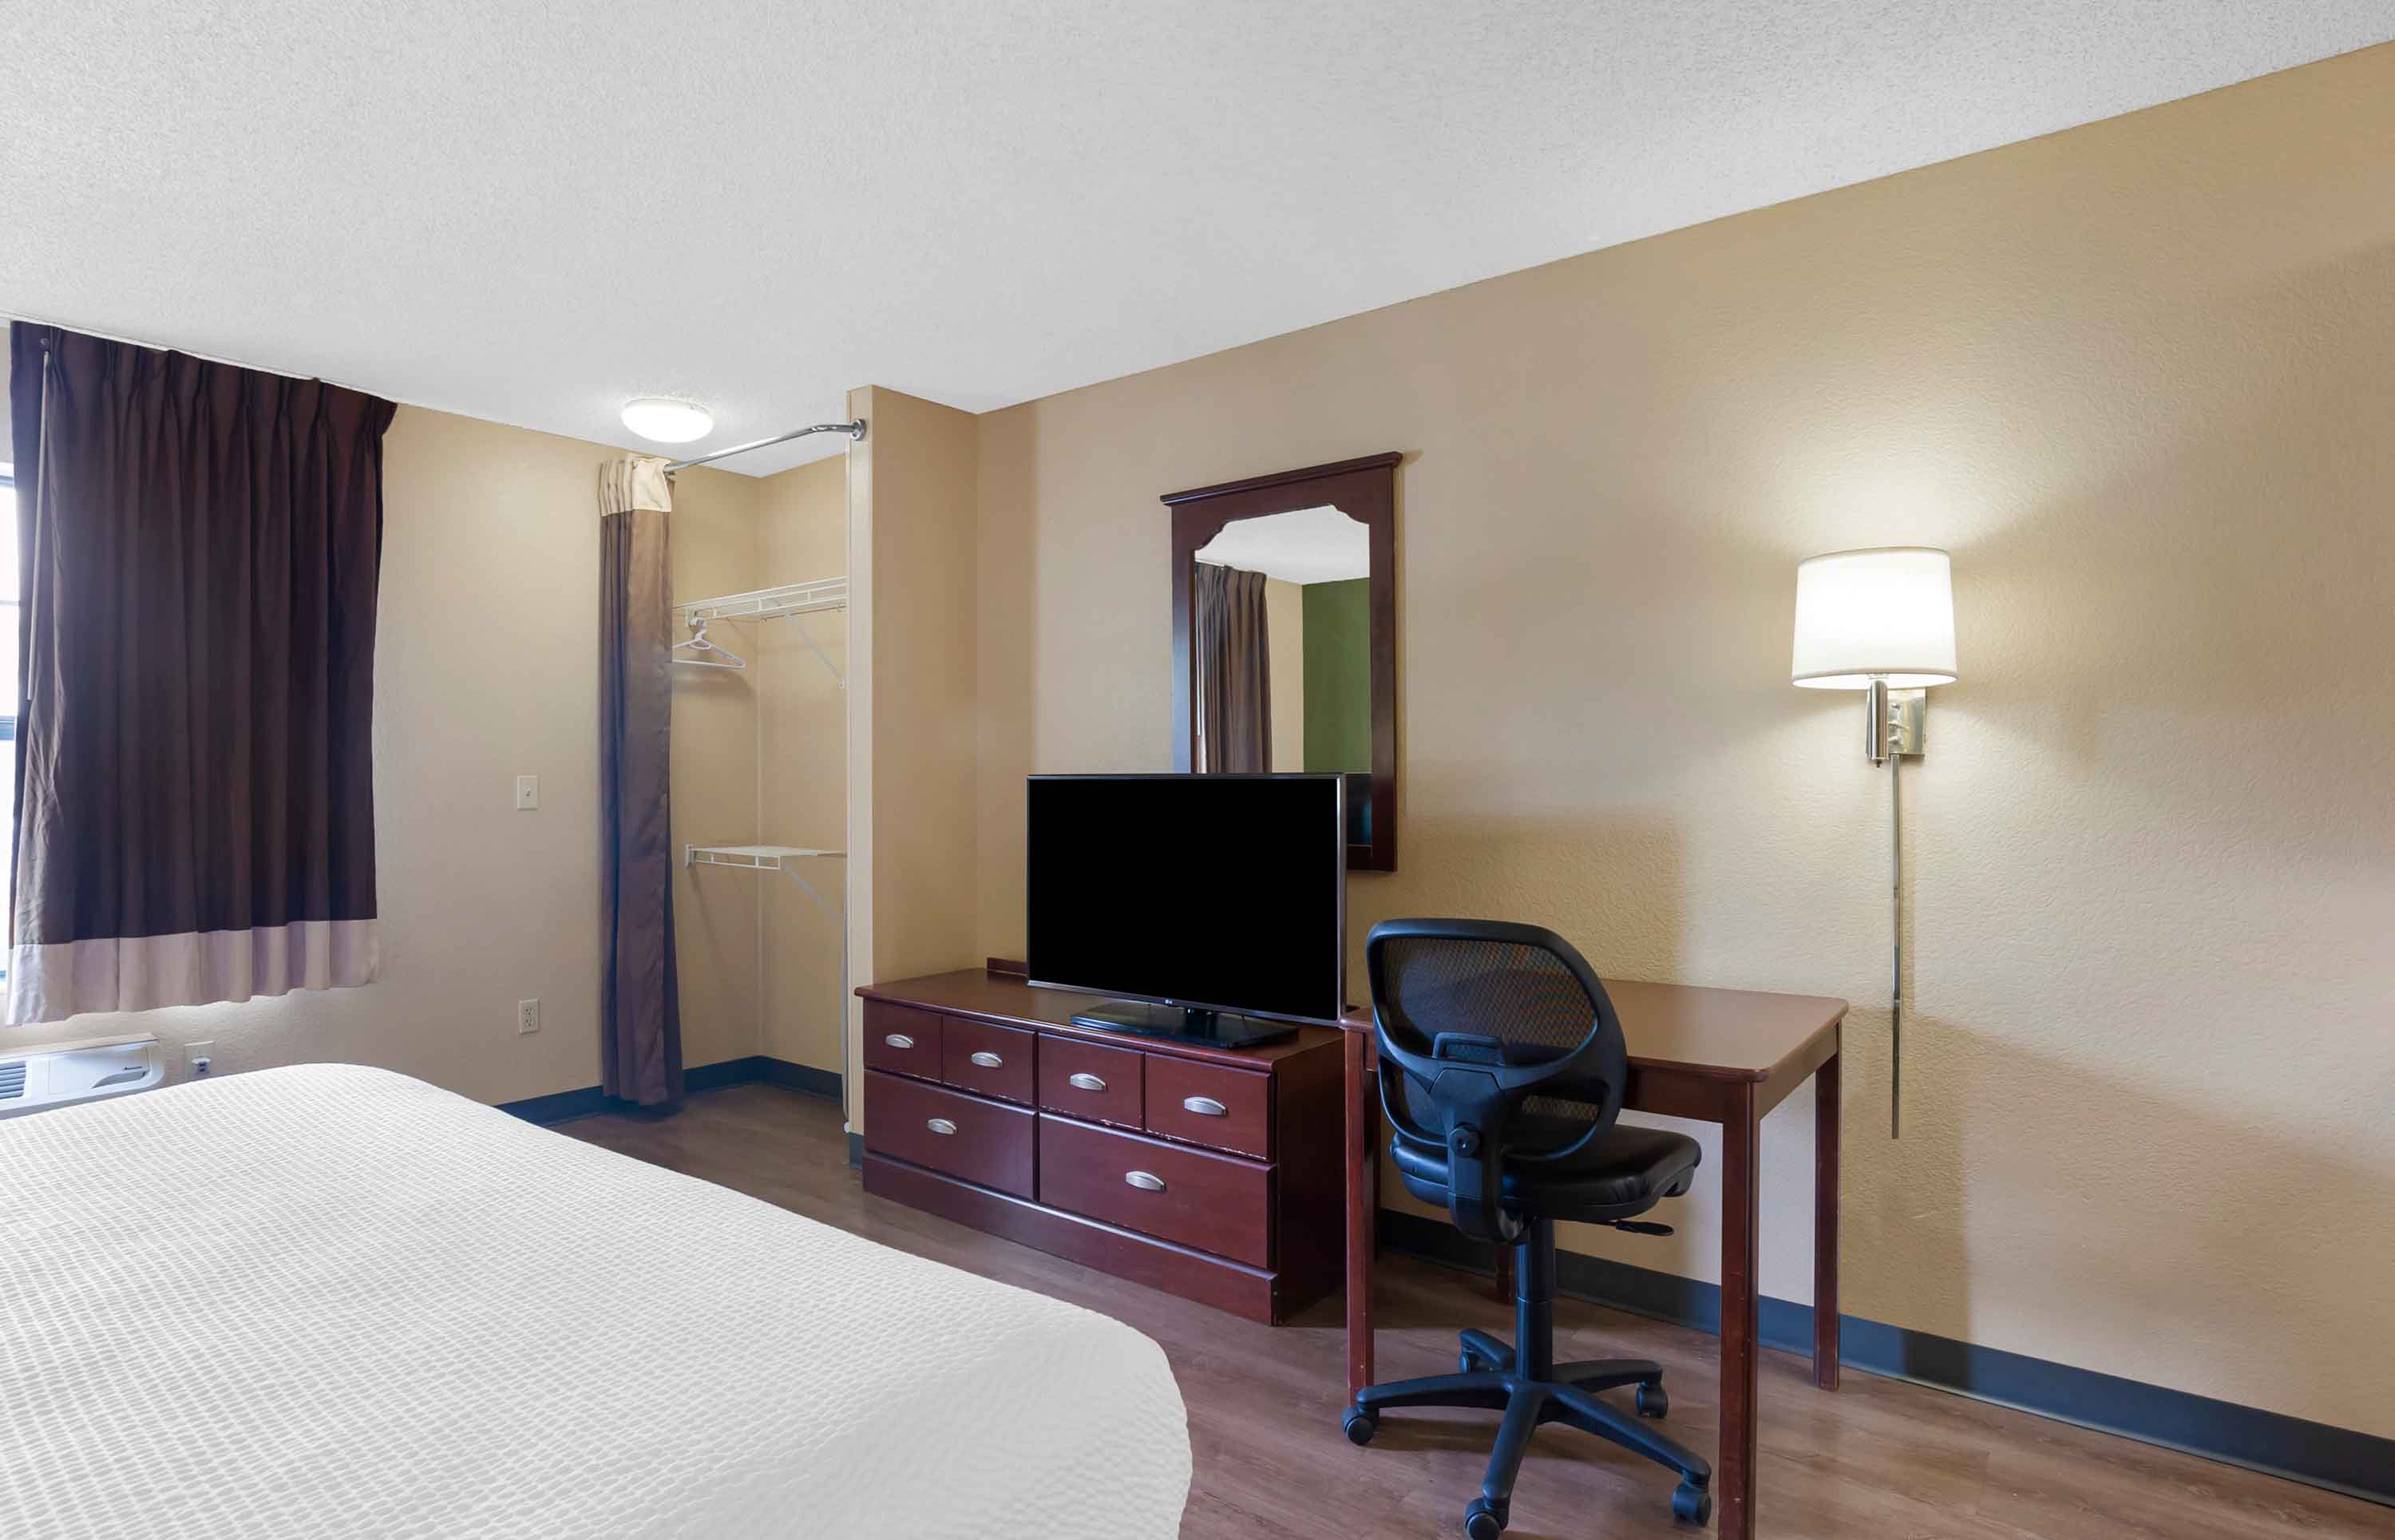 2 Bedroom Suite - 2 Queen Beds